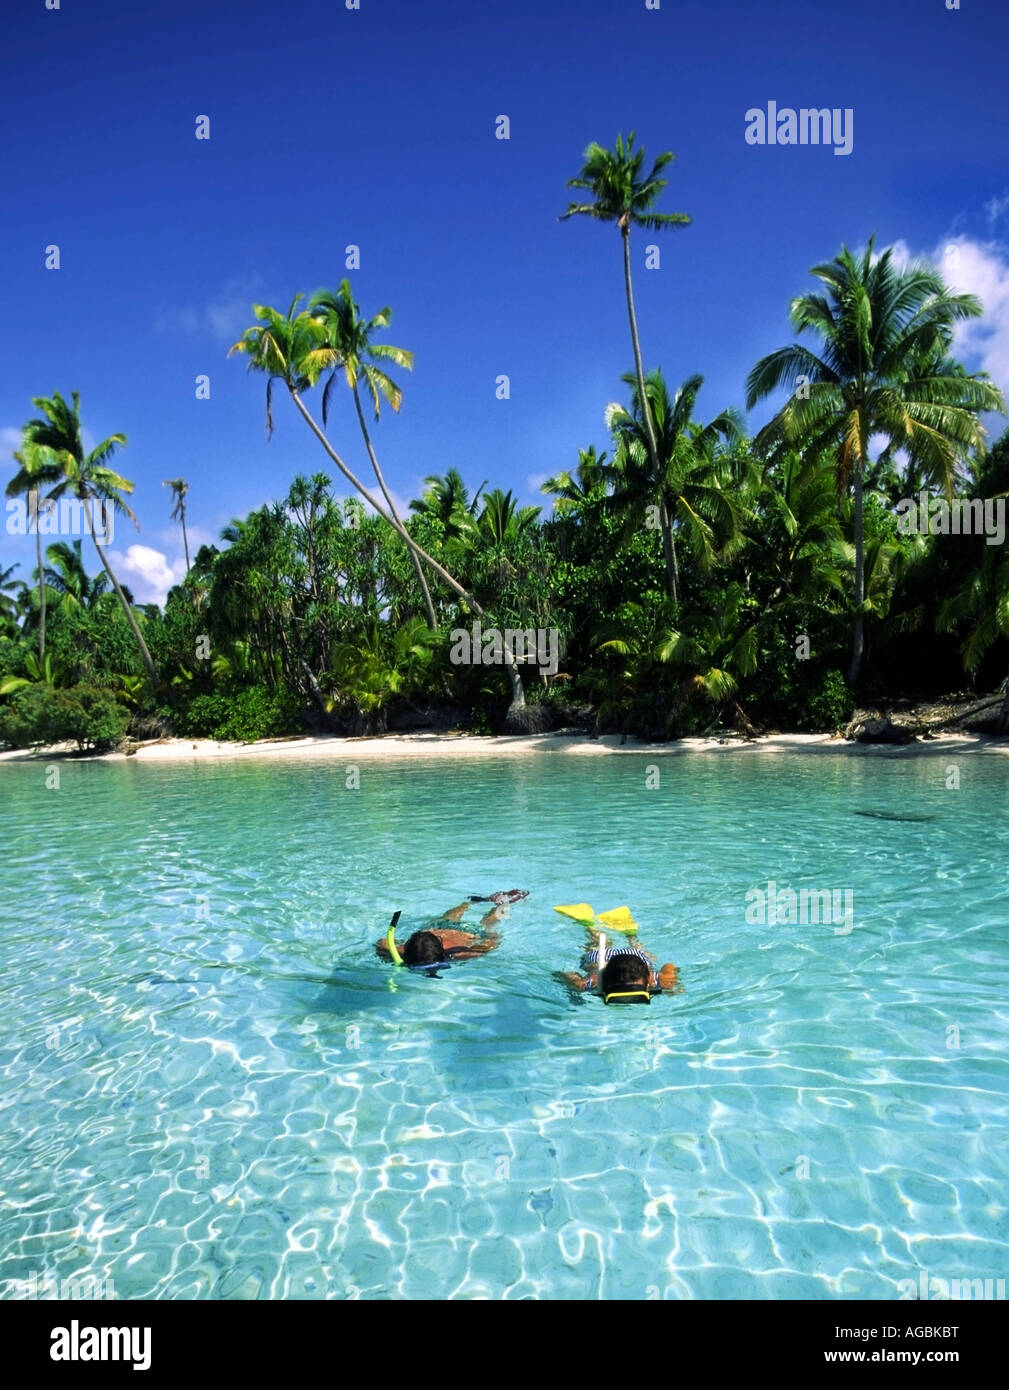 Sud Pacifico Isole Cook Aitutaki Lagoon un piede isola sogno spiaggia cristal acqua chiara giovane snorchling Foto Stock